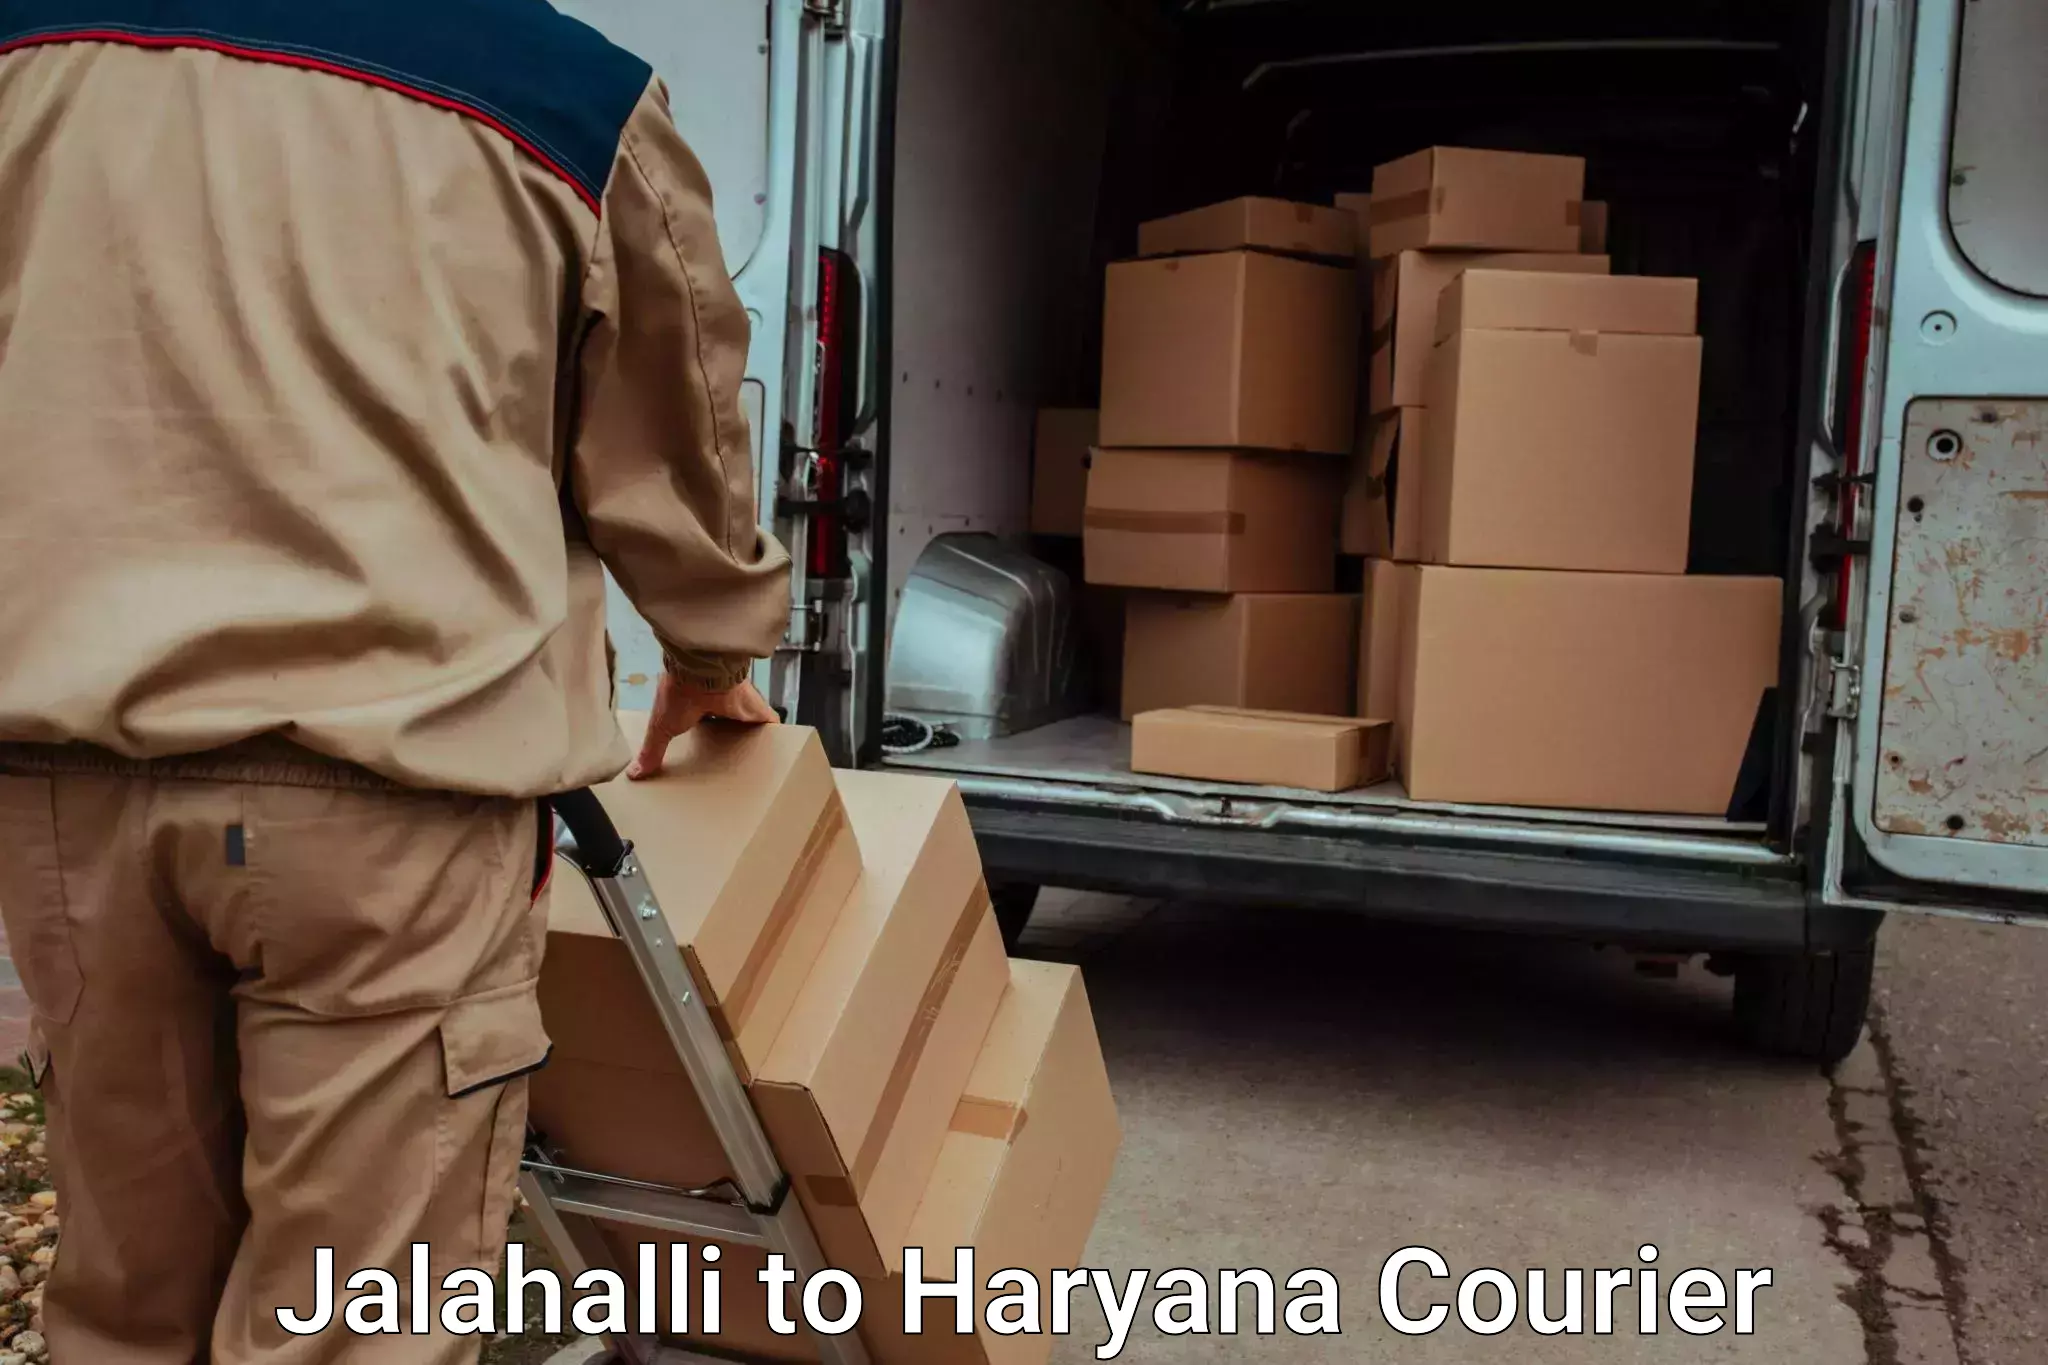 Luggage delivery network Jalahalli to Kurukshetra University